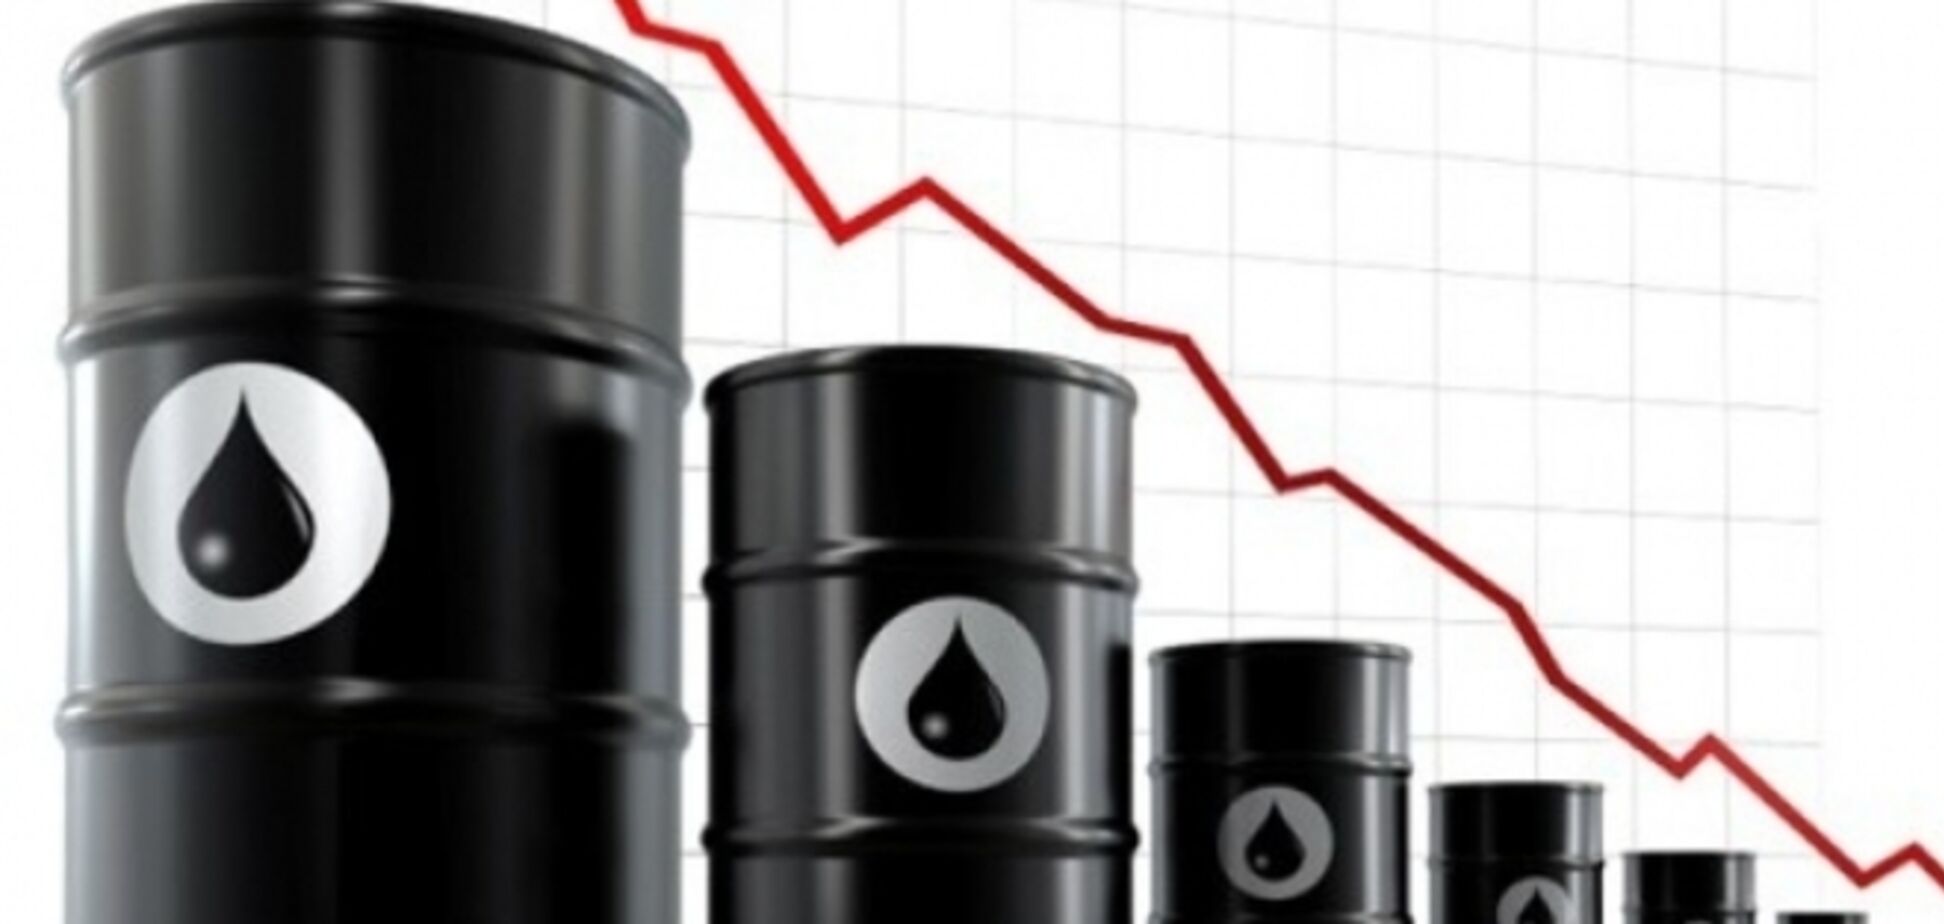 Ціна на нафту марки Brent опустилася нижче 78 дол. за барель